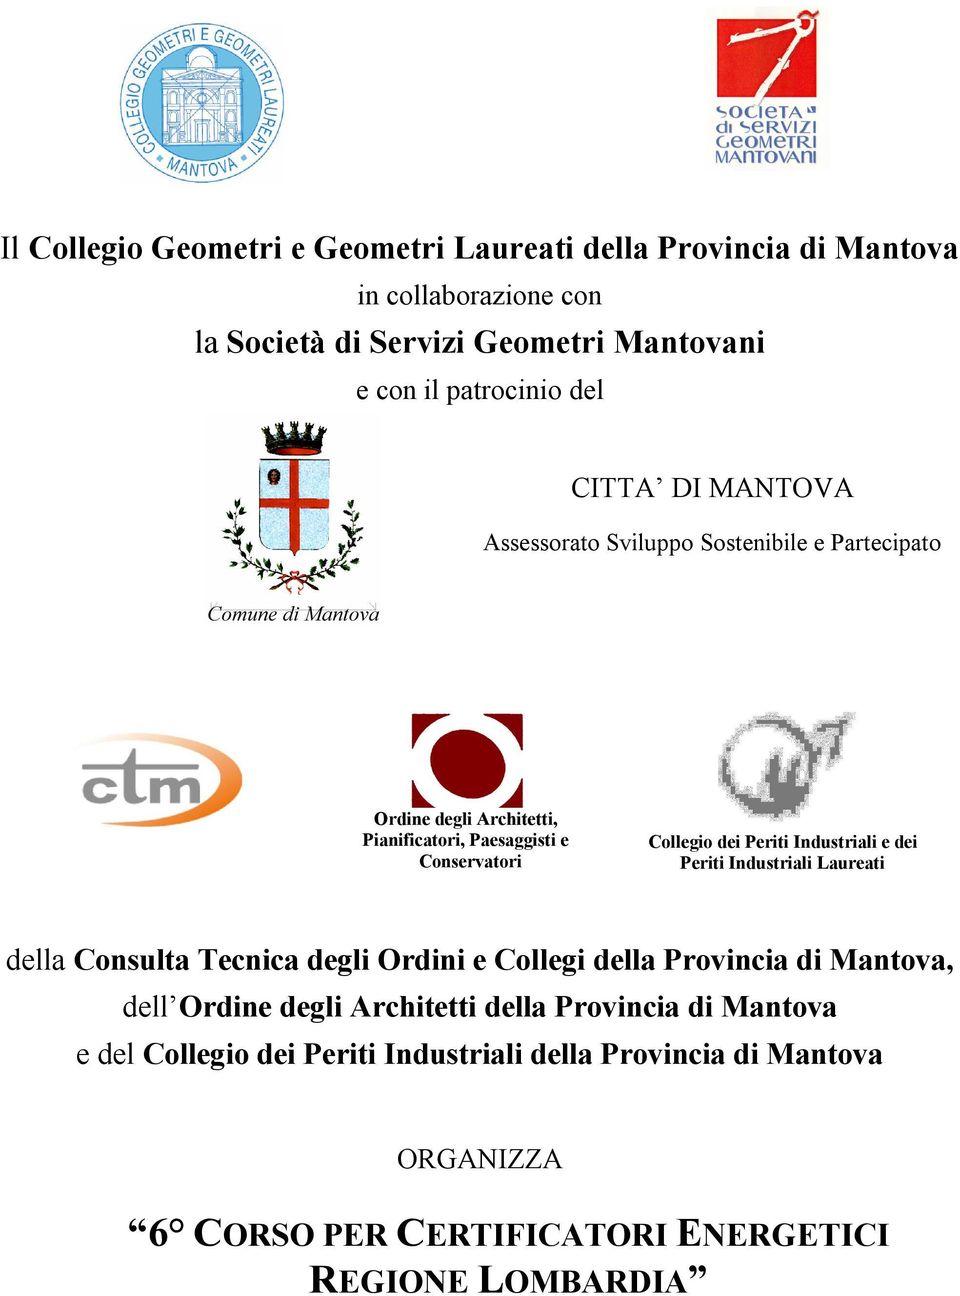 Periti Industriali e dei Periti Industriali Laureati della Consulta Tecnica degli Ordini e Collegi della Provincia di Mantova, del Ordine degli